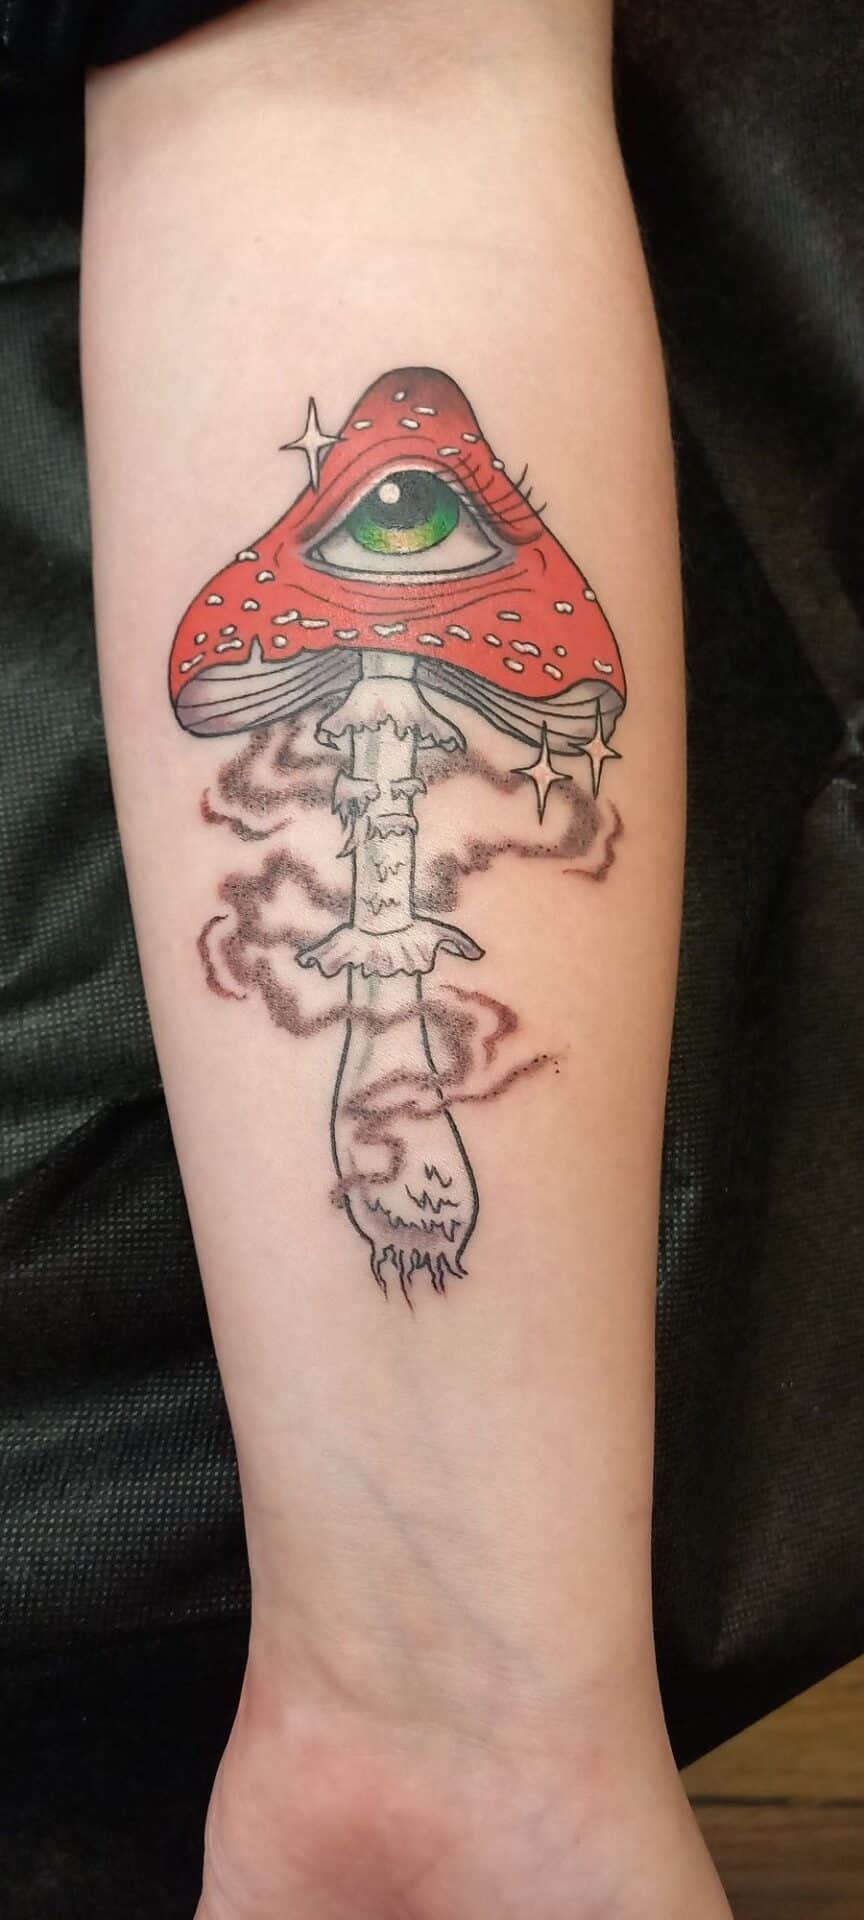 Poisonous mushroom tattoo